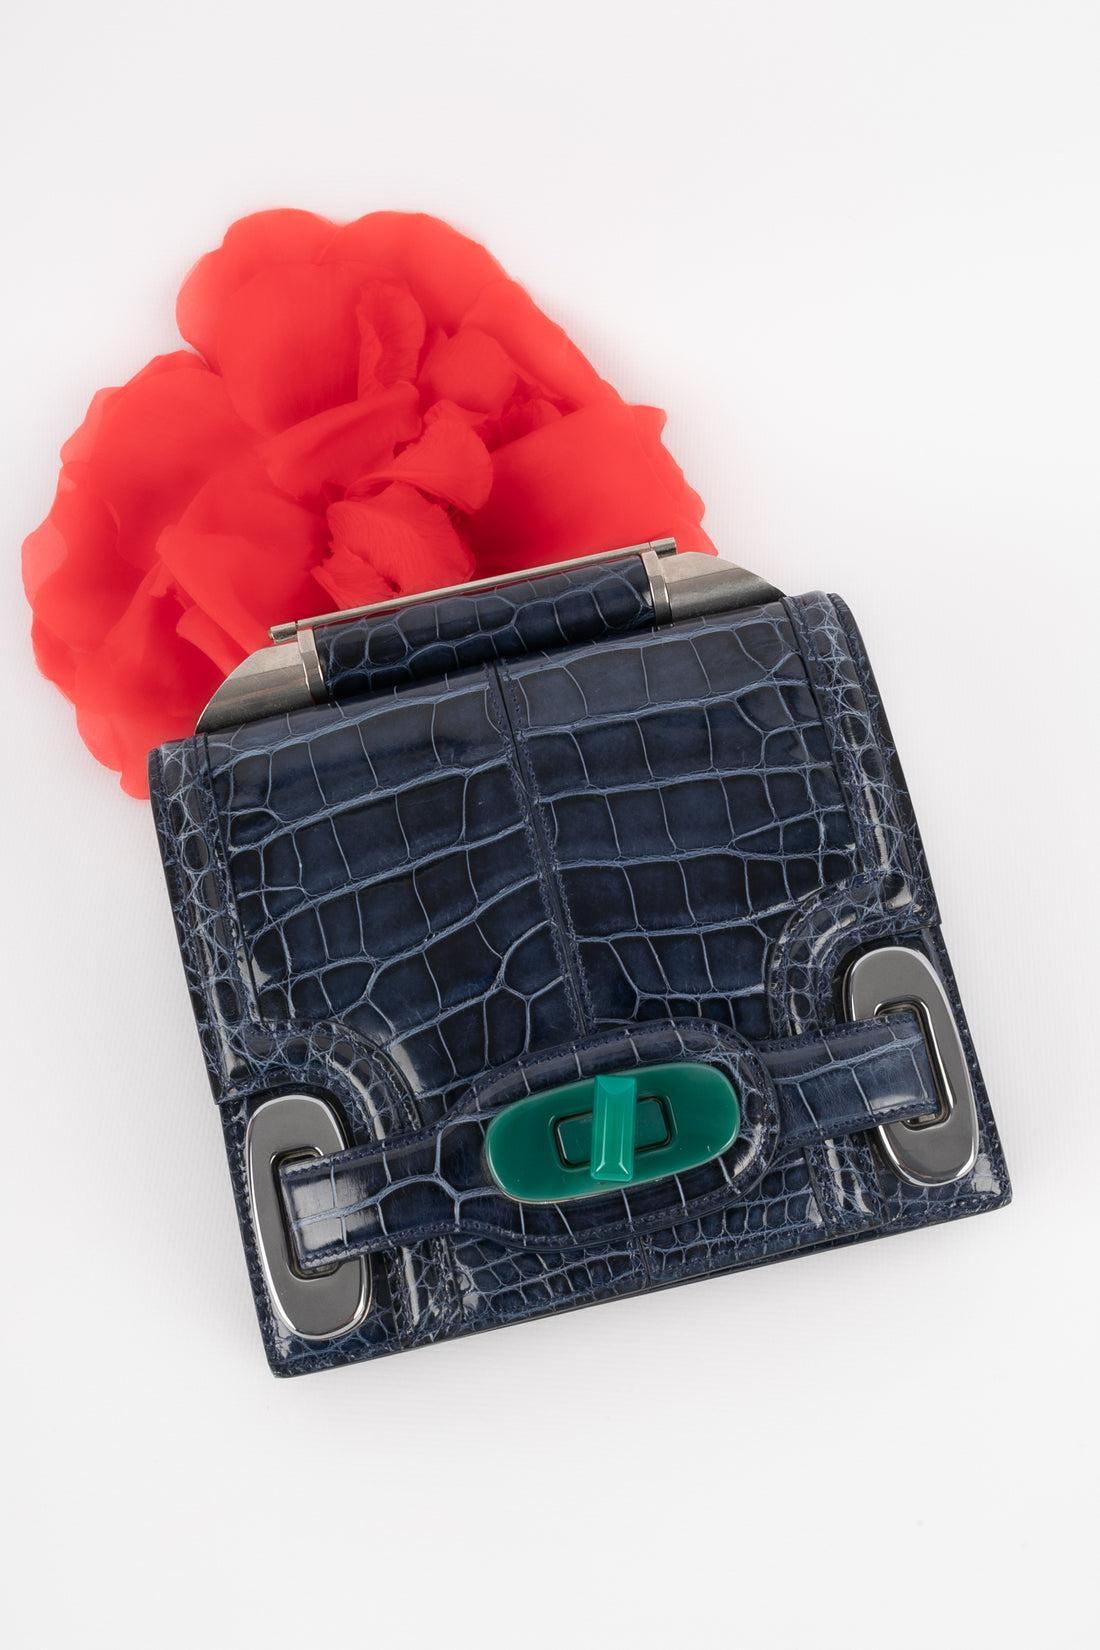 Balenciaga - Blaue Tasche aus exotischem Leder mit silbernen Metallelementen und einem grünen Bakelitverschluss. Tasche mit einer Seriennummer.

Zusätzliche Informationen:
Zustand: Sehr guter Zustand
Abmessungen: Höhe: 16 cm - Länge: 17 cm - Tiefe: